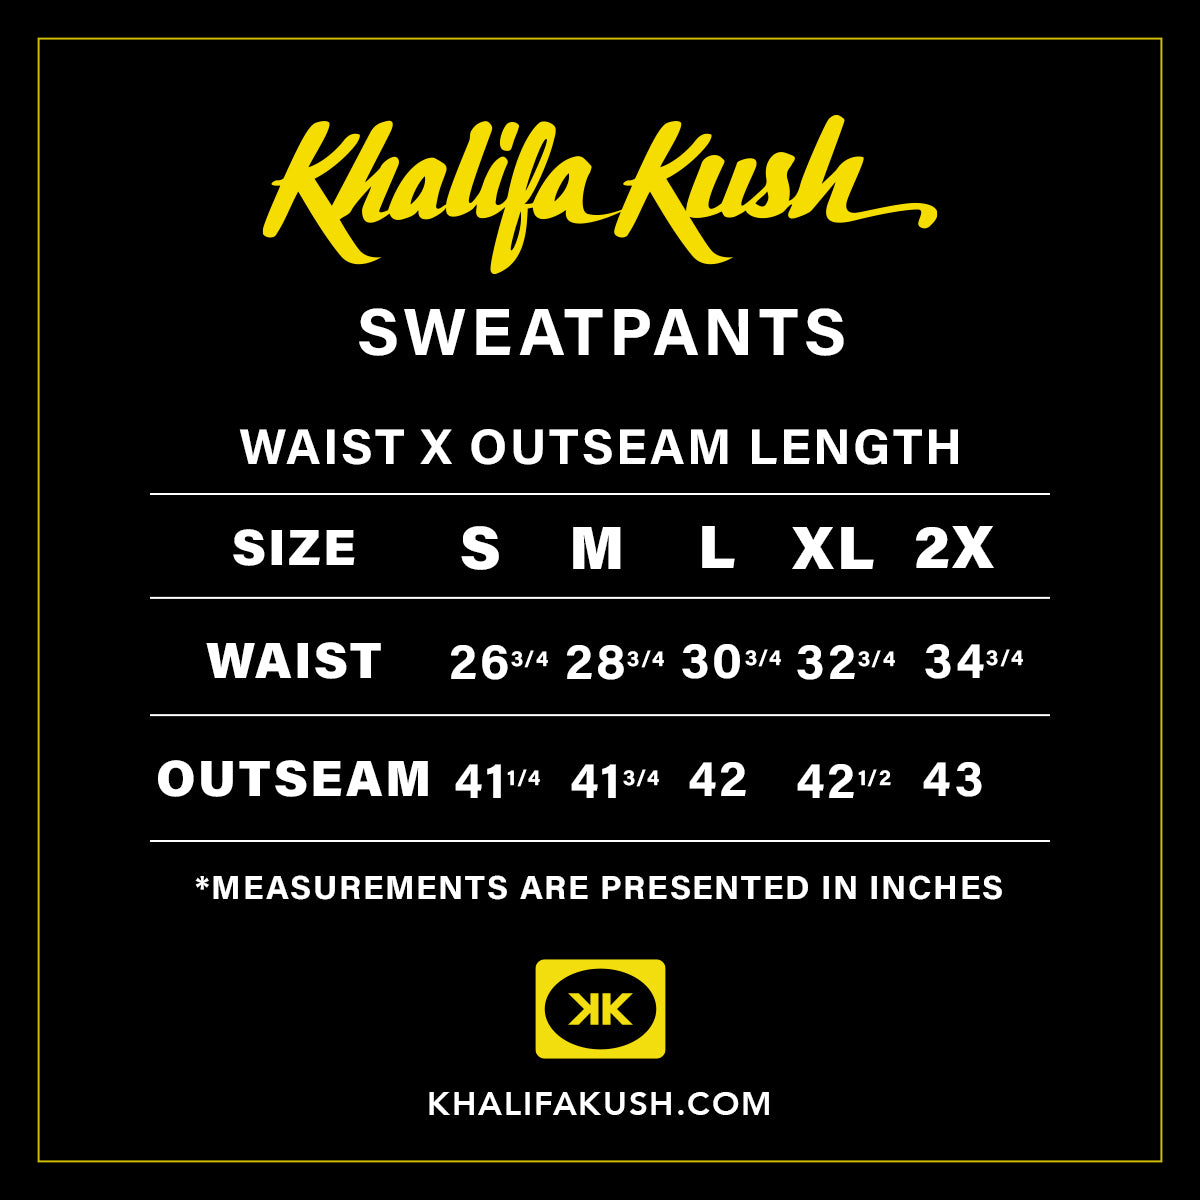 Hella Cozy Sweatpants - Khalifa Kush